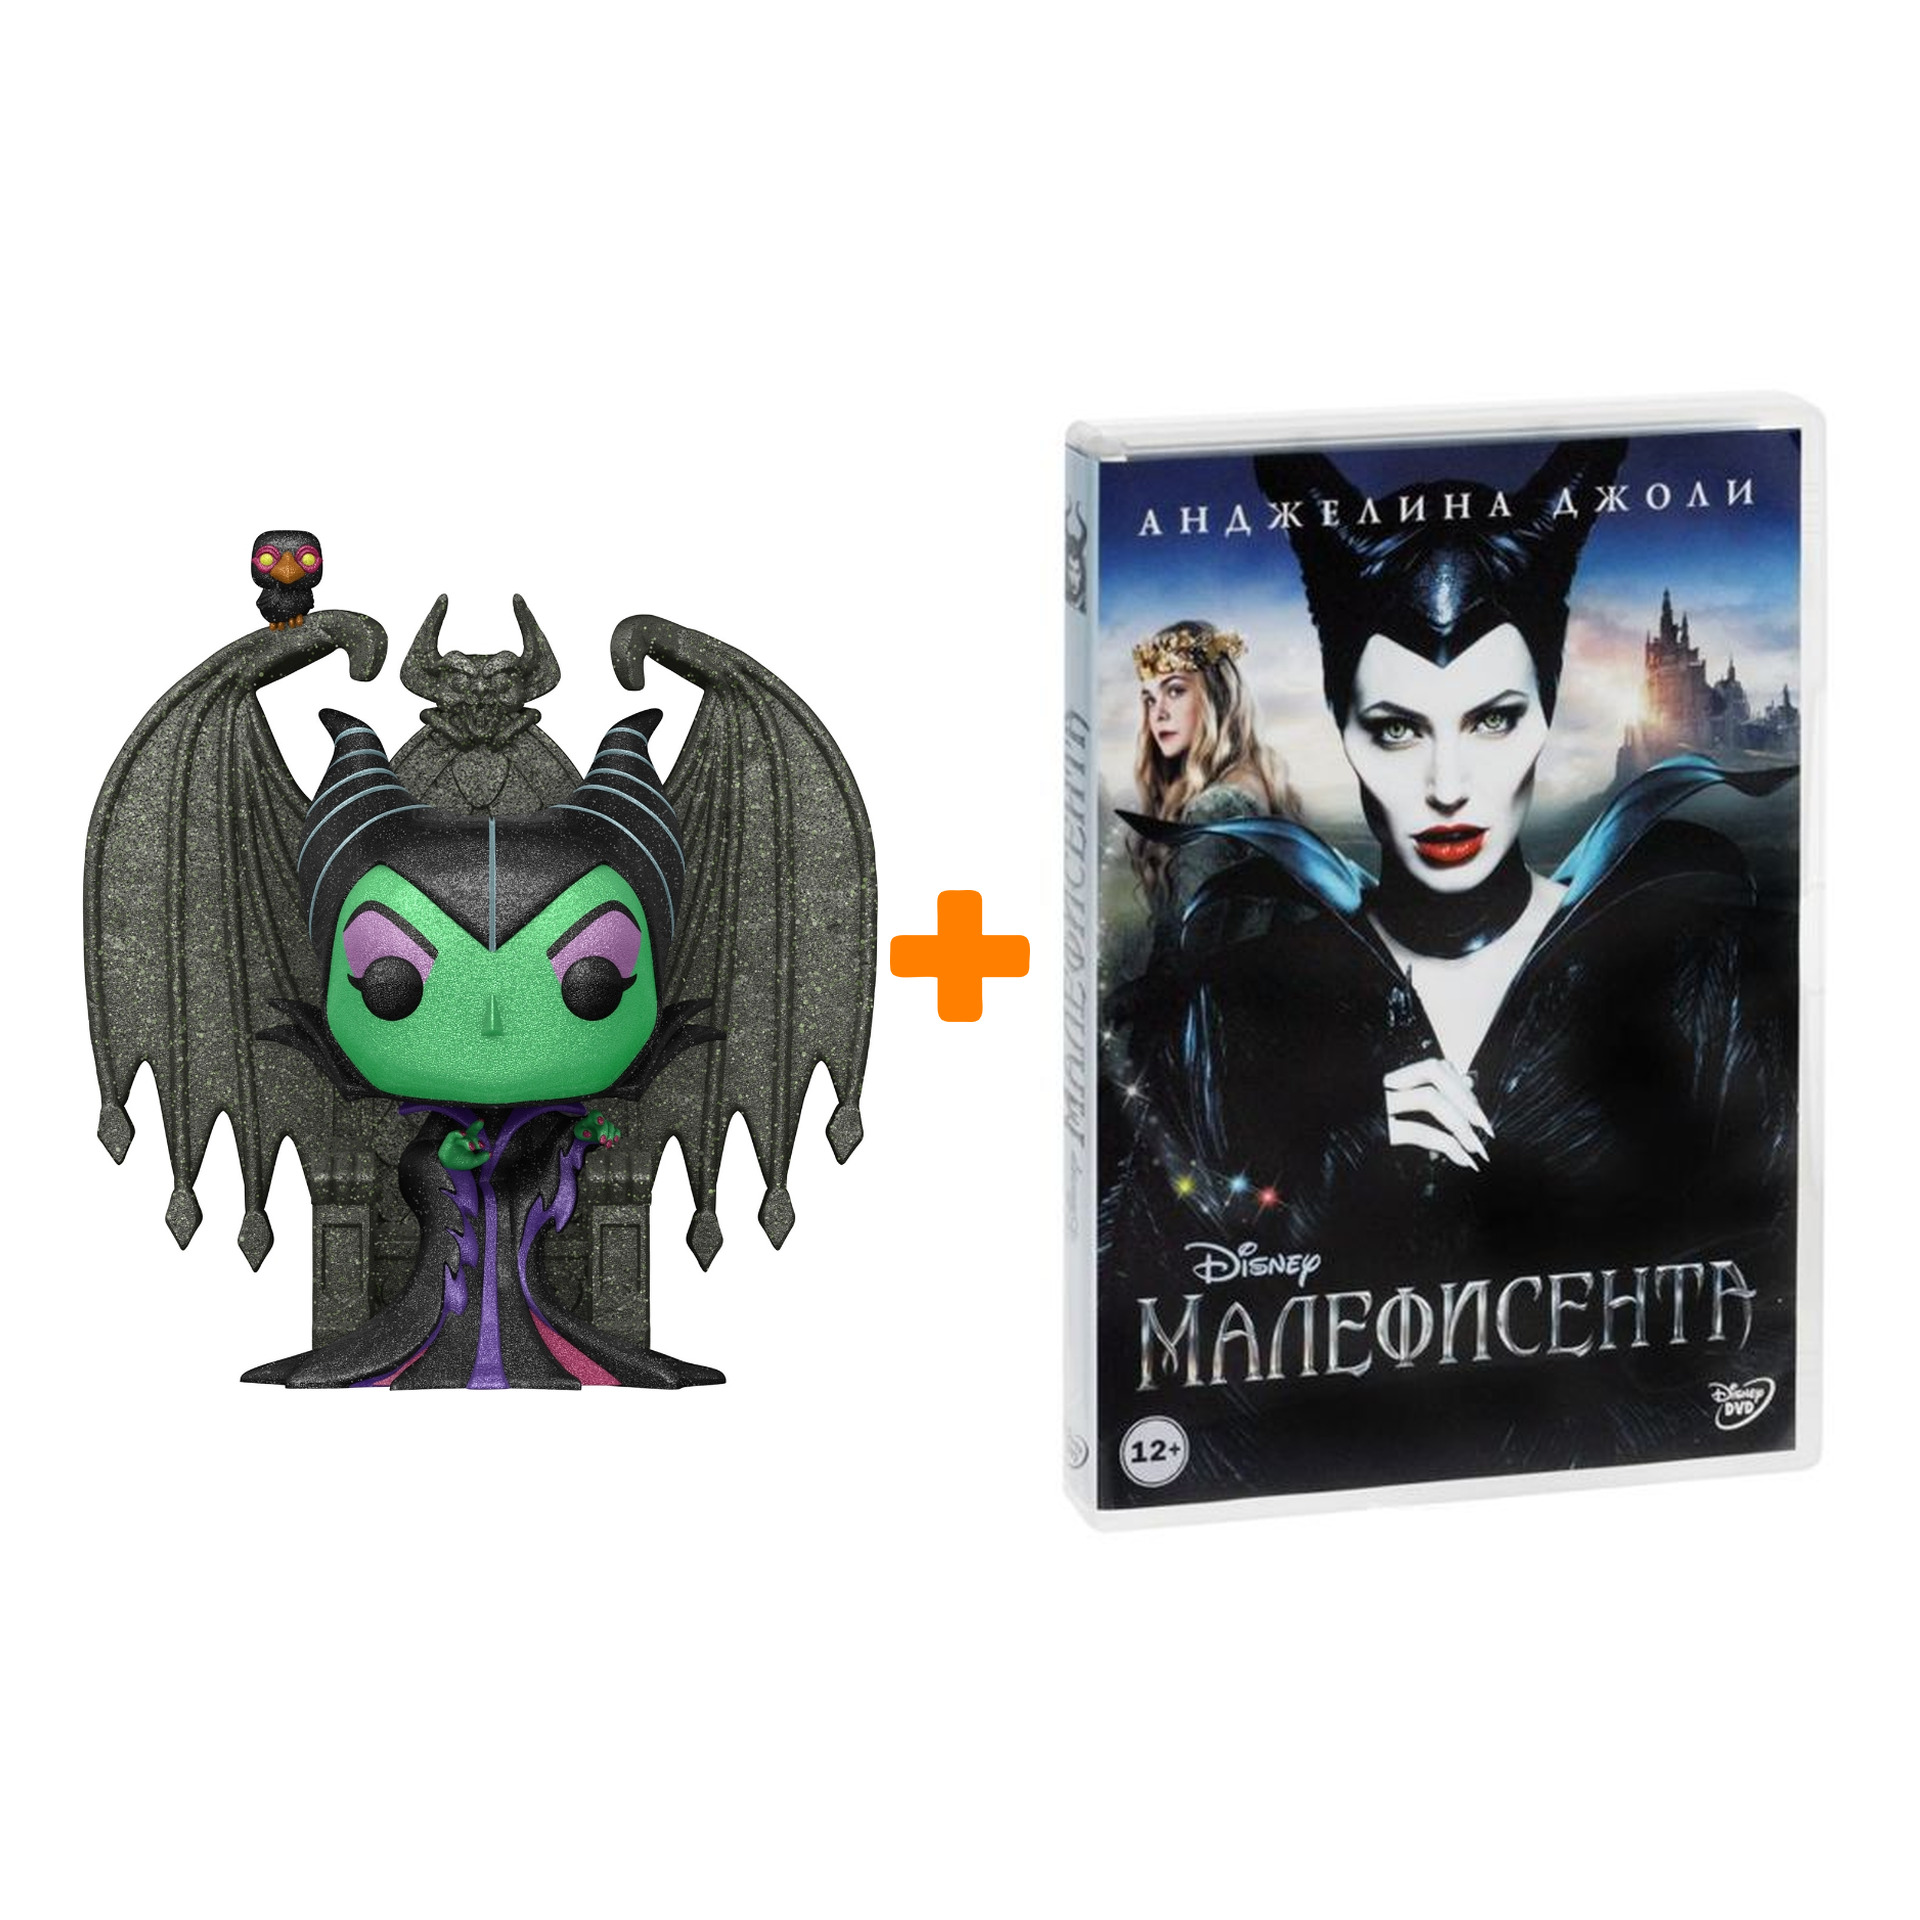 Набор фигурка Disney Villains Maleficent + Малефисента (региональное издание) (DVD) фото